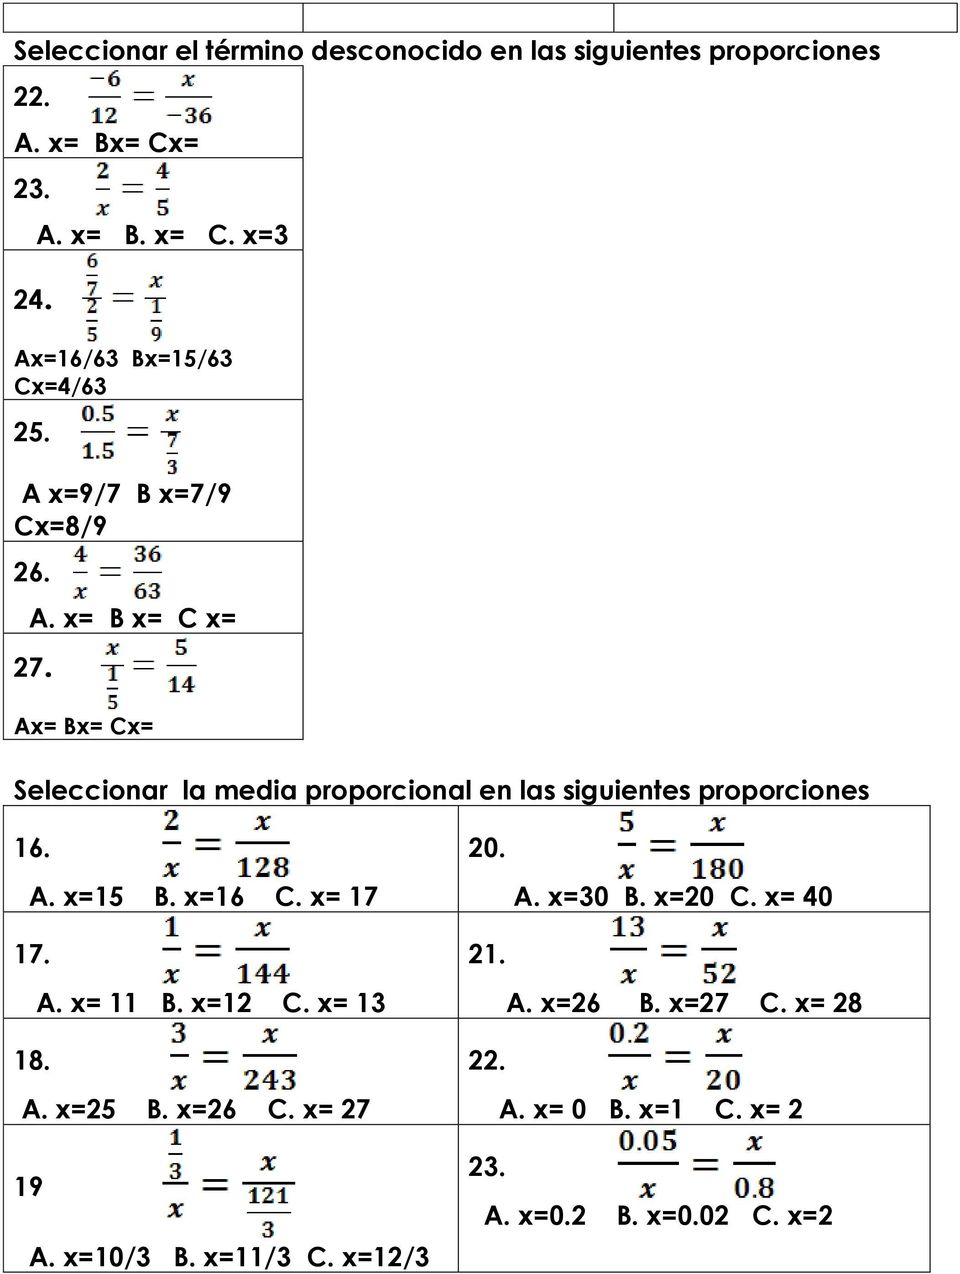 Ax= Bx= Cx= Seleccionar la media proporcional en las siguientes proporciones 16. A. x=15 B. x=16 C. x= 17 17. A. x= 11 B.